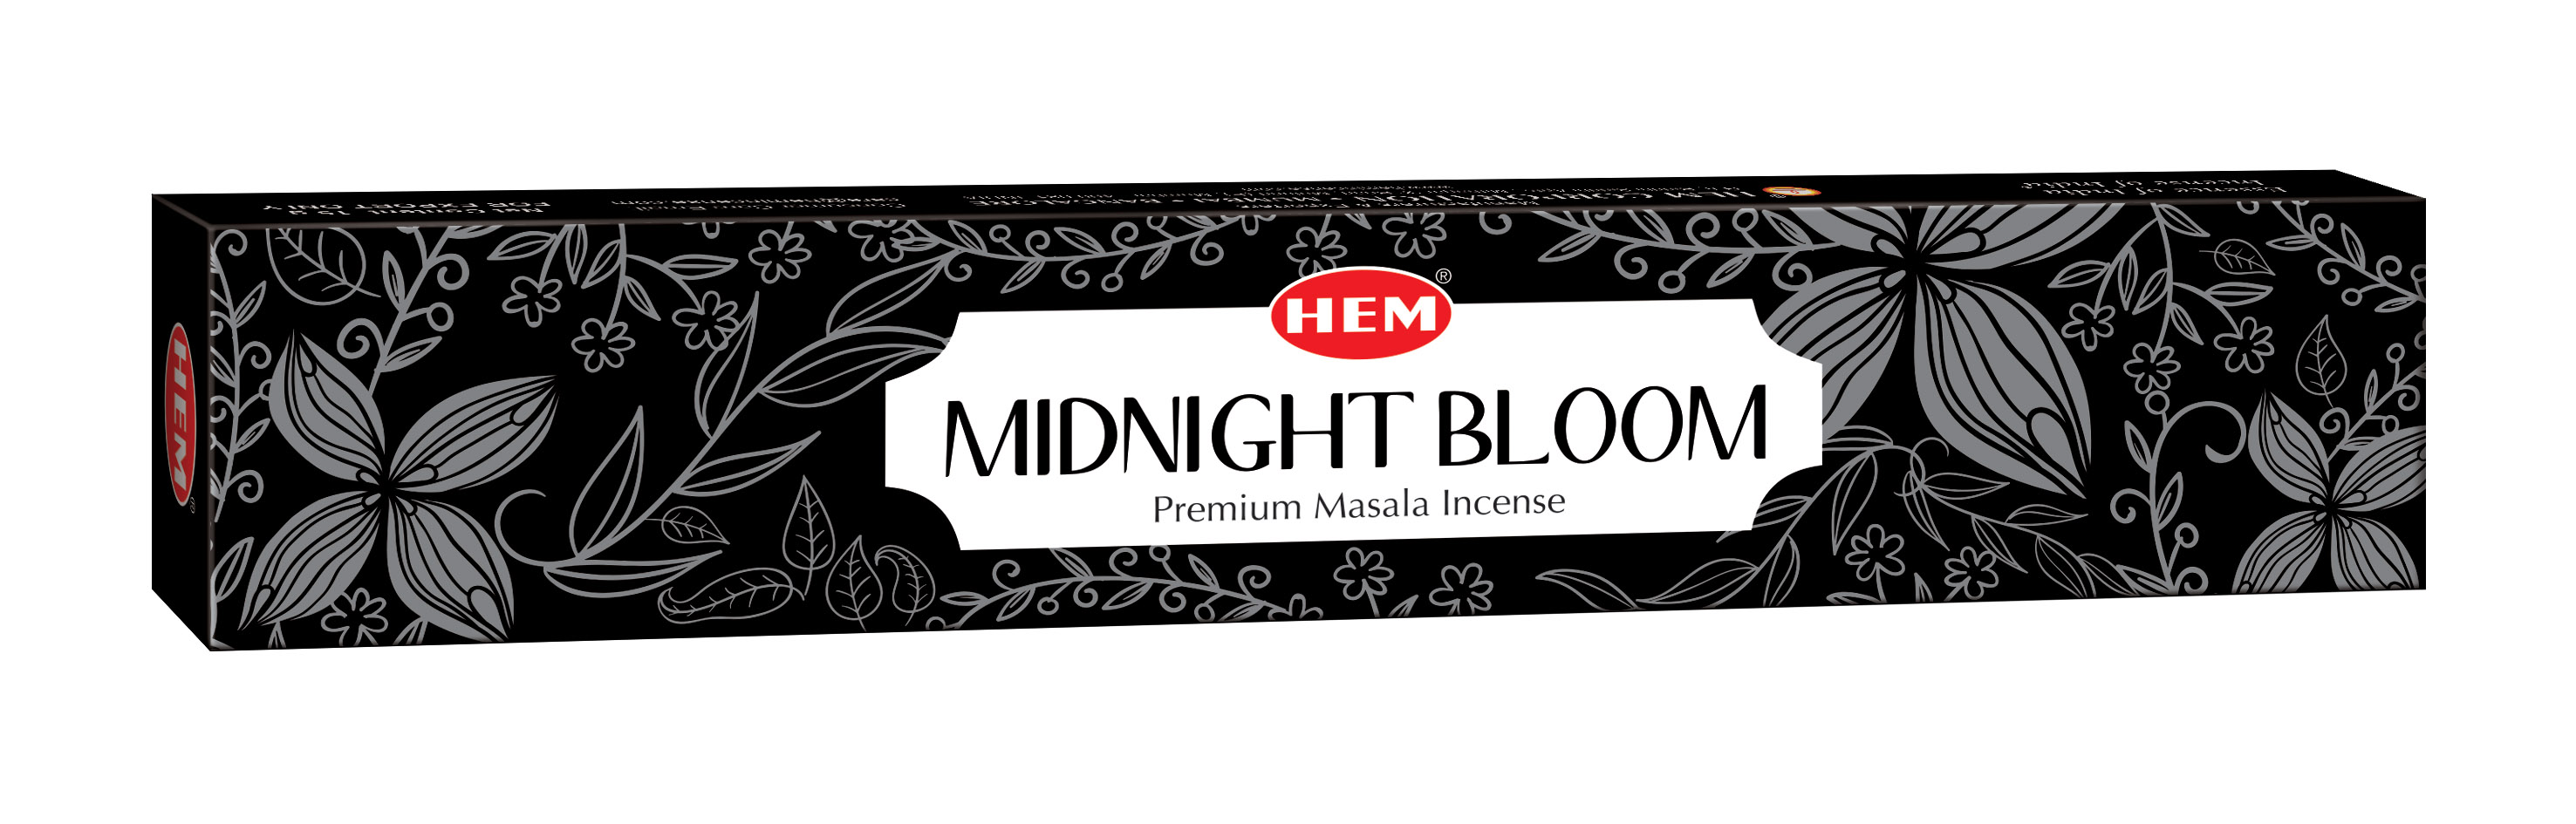 HEM Weihrauch Midnight Bloom Masala (12er Pack)